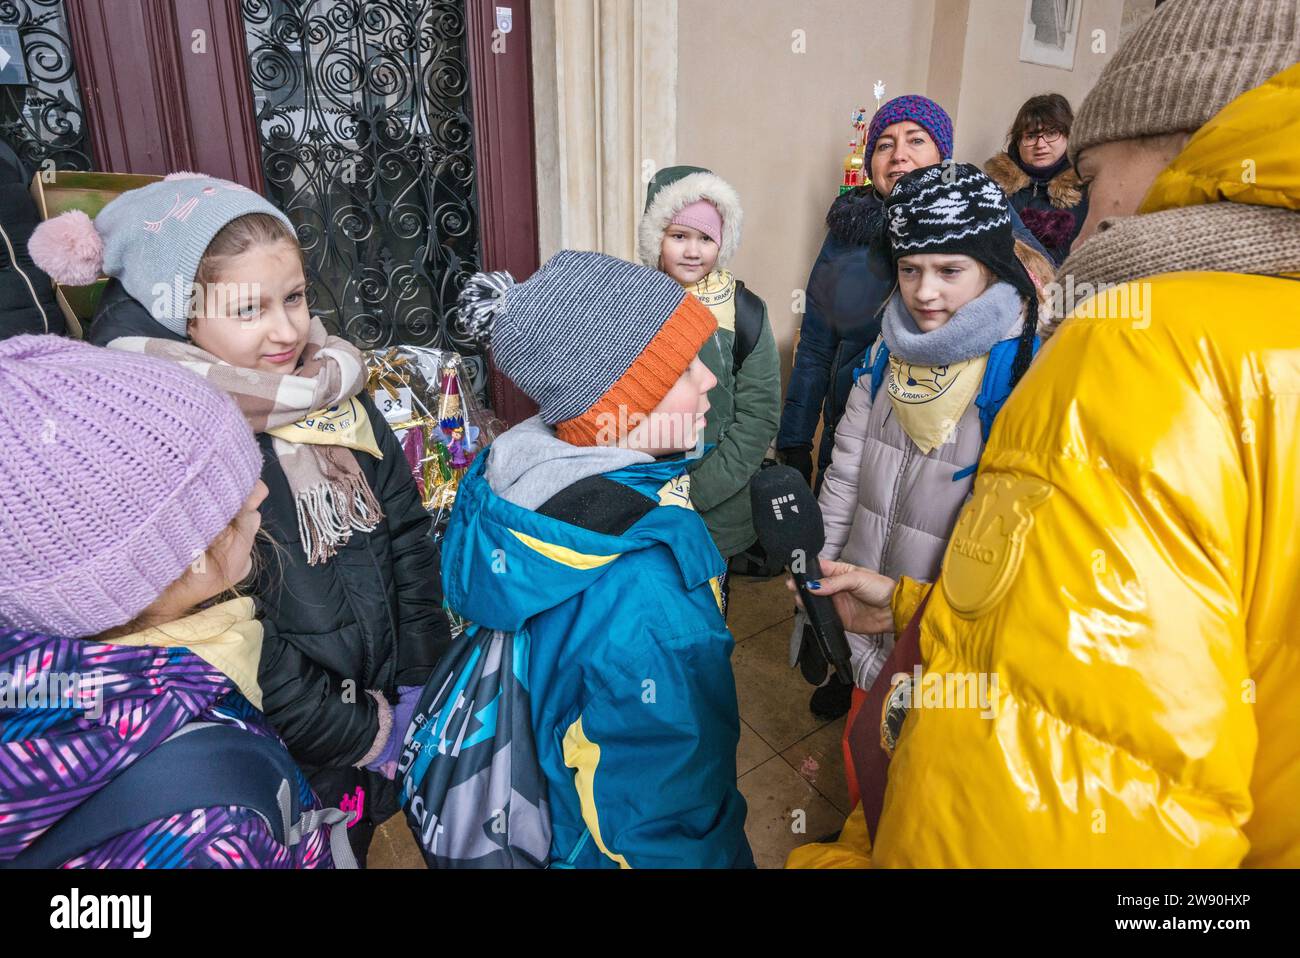 Reporter, der Kinder in der Nähe von Szopka (Weihnachtskrippe) interviewt, die sie in ihrer Grundschule gemacht haben, auf der Eröffnung des jährlichen Wettbewerbs im Dezember, der Veranstaltung, die in die Liste des UNESCO-Weltkulturerbes aufgenommen wurde, in den Arkaden von Sukiennice (Tuchhalle), dem Hauptmarkt in Kraków, Polen Stockfoto